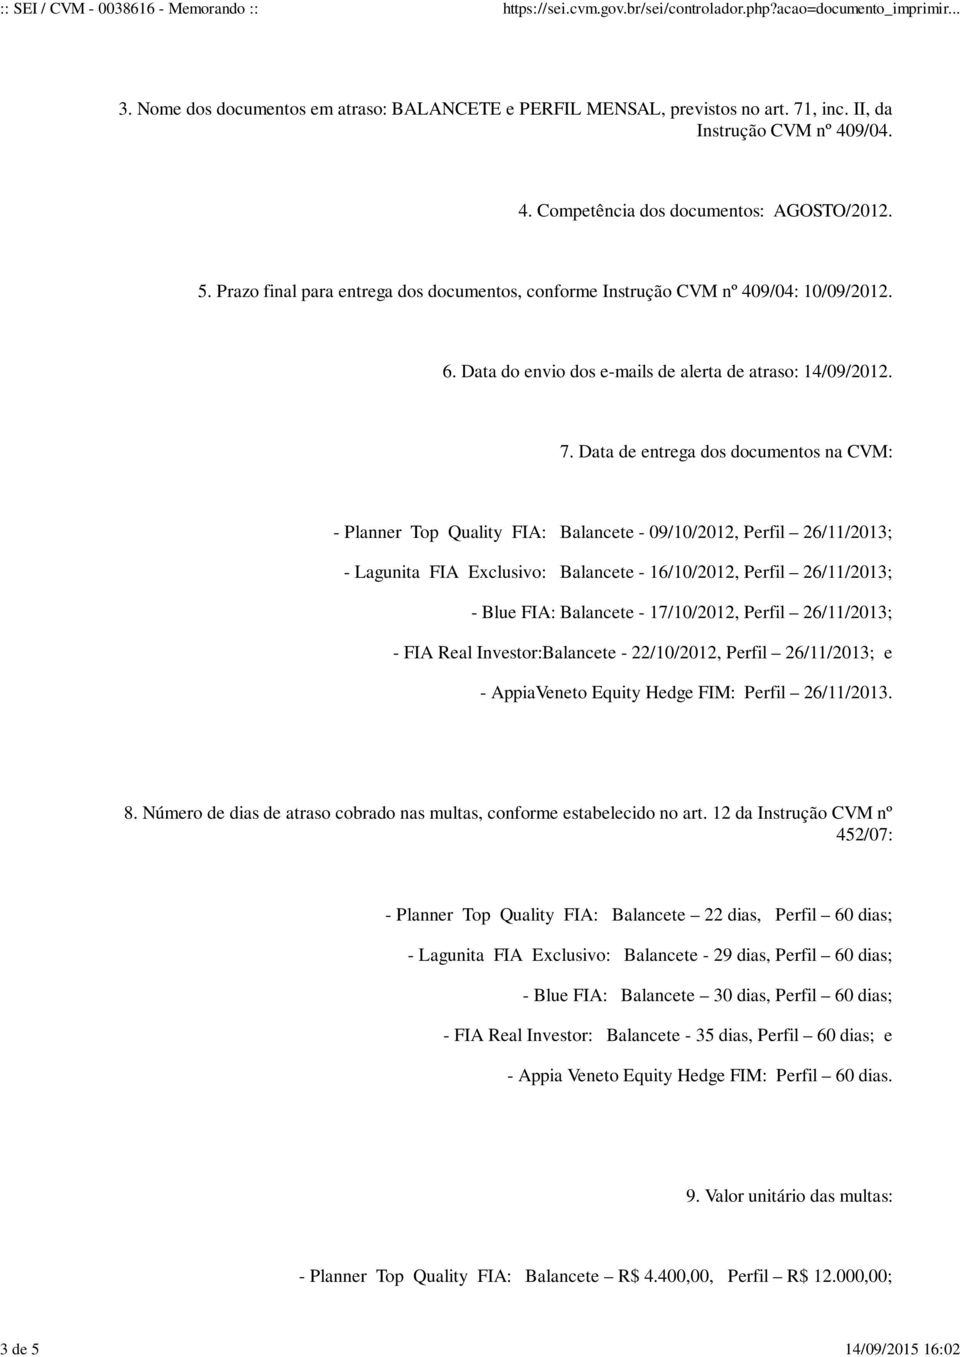 Data de entrega dos documentos na CVM: - Planner Top Quality FIA: Balancete - 09/10/2012, Perfil 26/11/2013; - Lagunita FIA Exclusivo: Balancete - 16/10/2012, Perfil 26/11/2013; - Blue FIA: Balancete